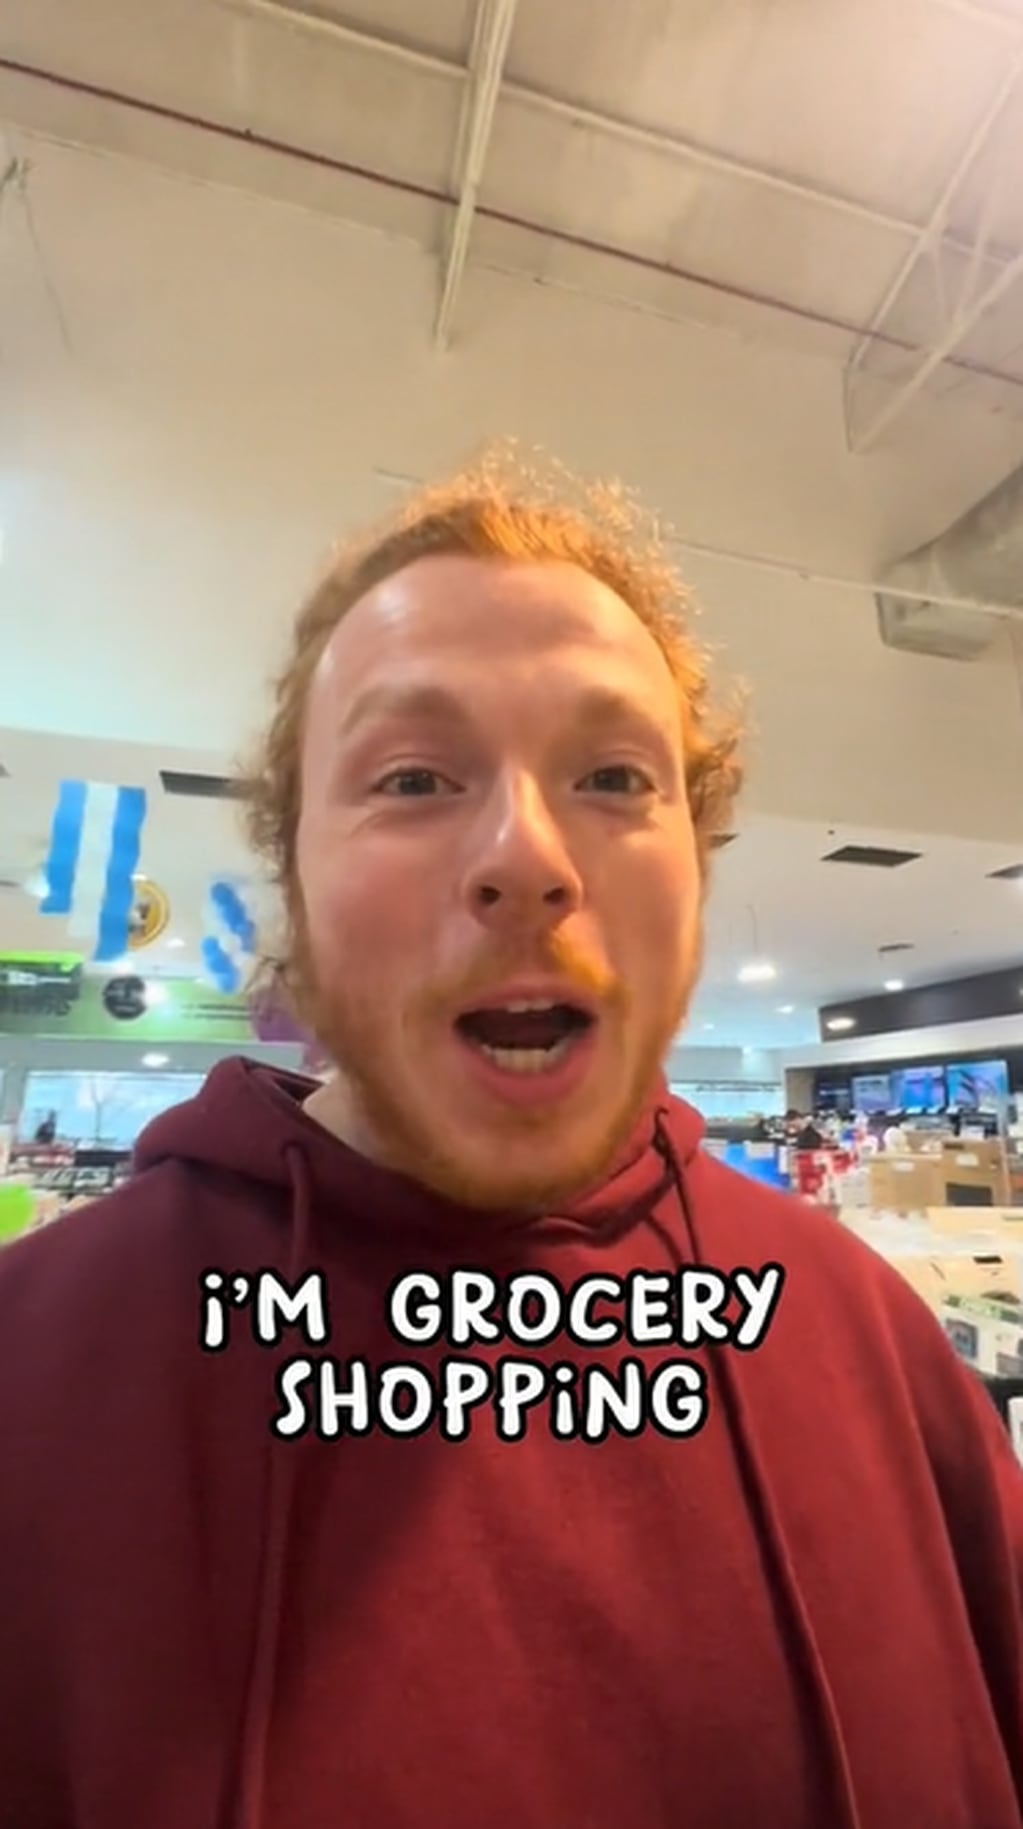 Un joven norteamericano se hizo viral tras grabarse comprando en un supermercado en el país